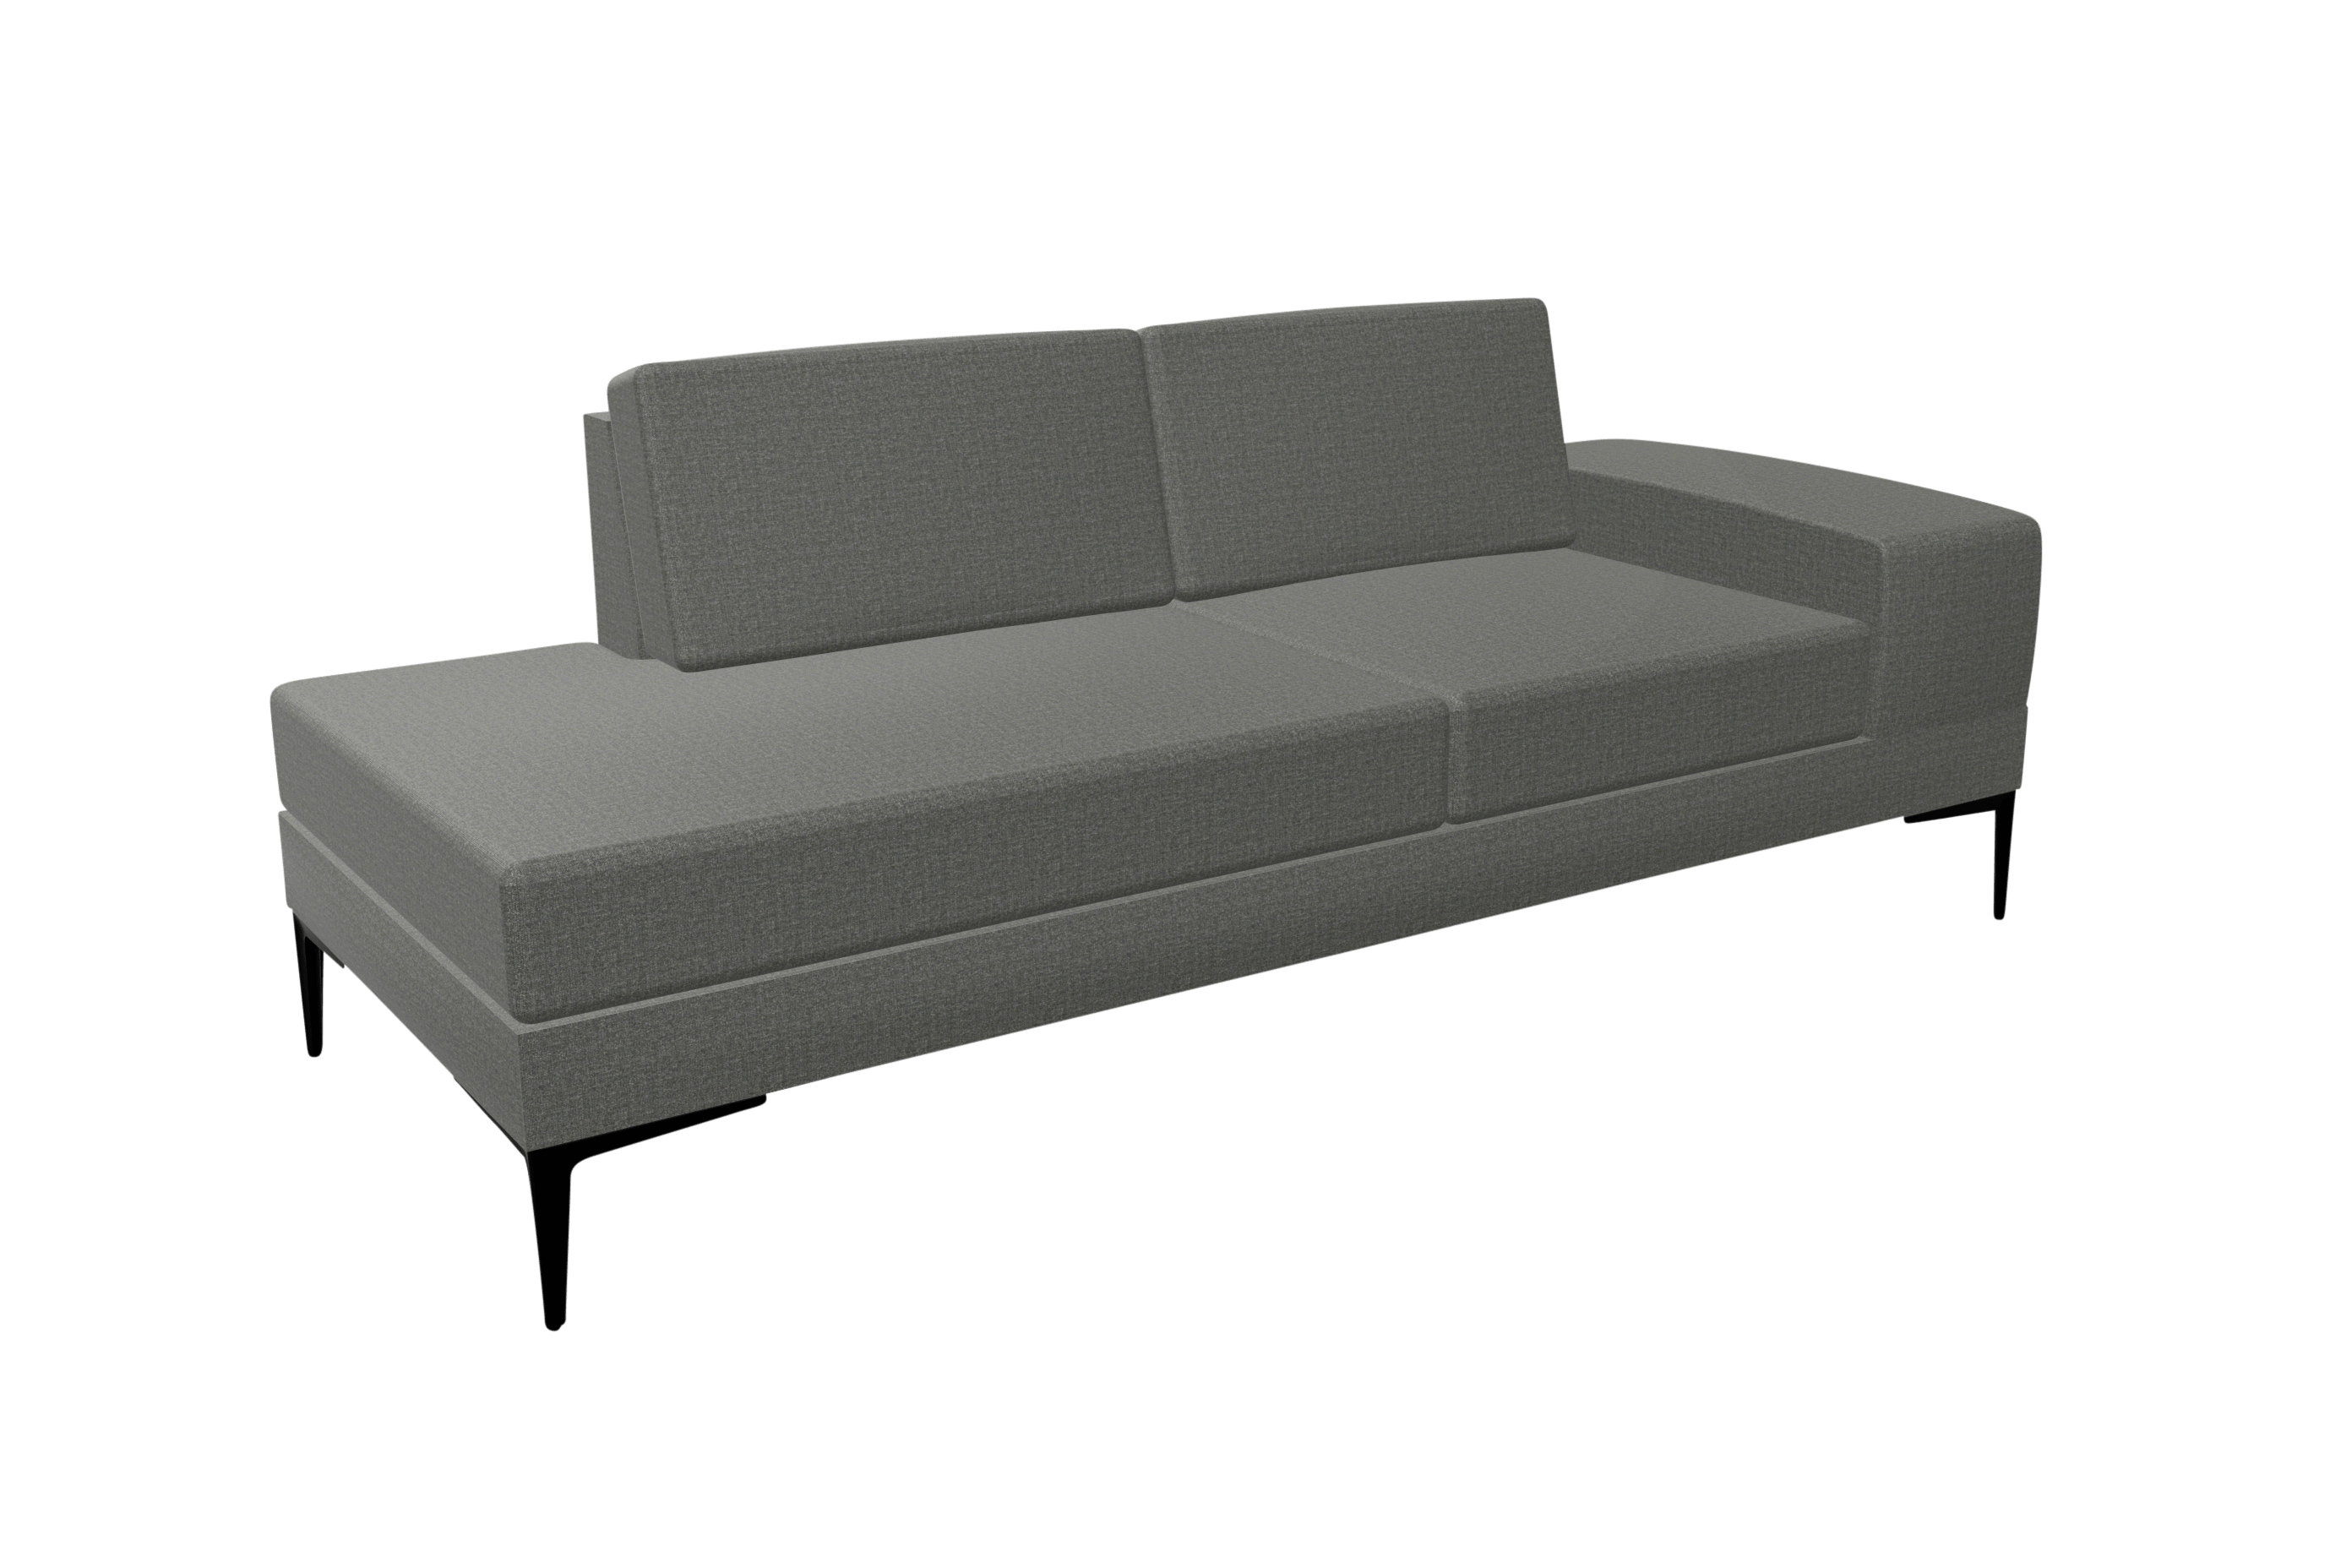 A grey sofa with black legs